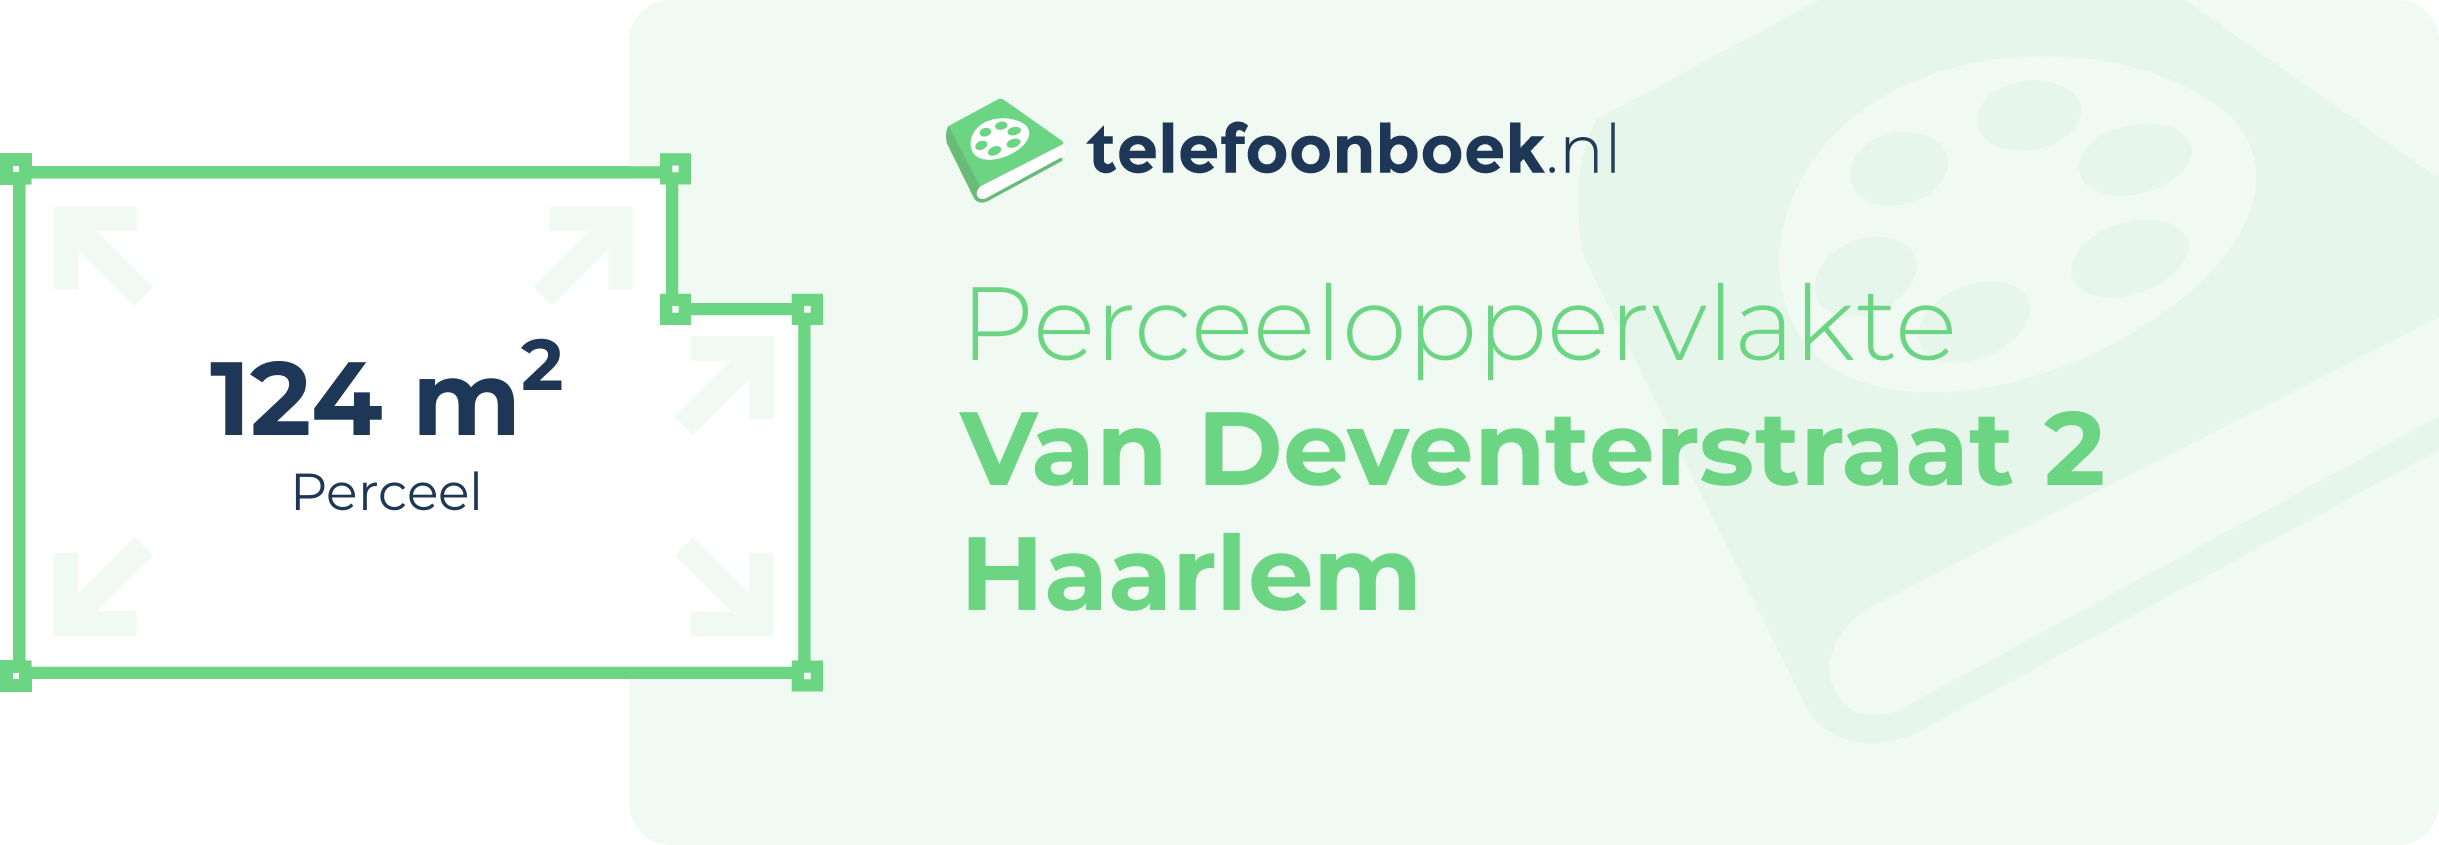 Perceeloppervlakte Van Deventerstraat 2 Haarlem